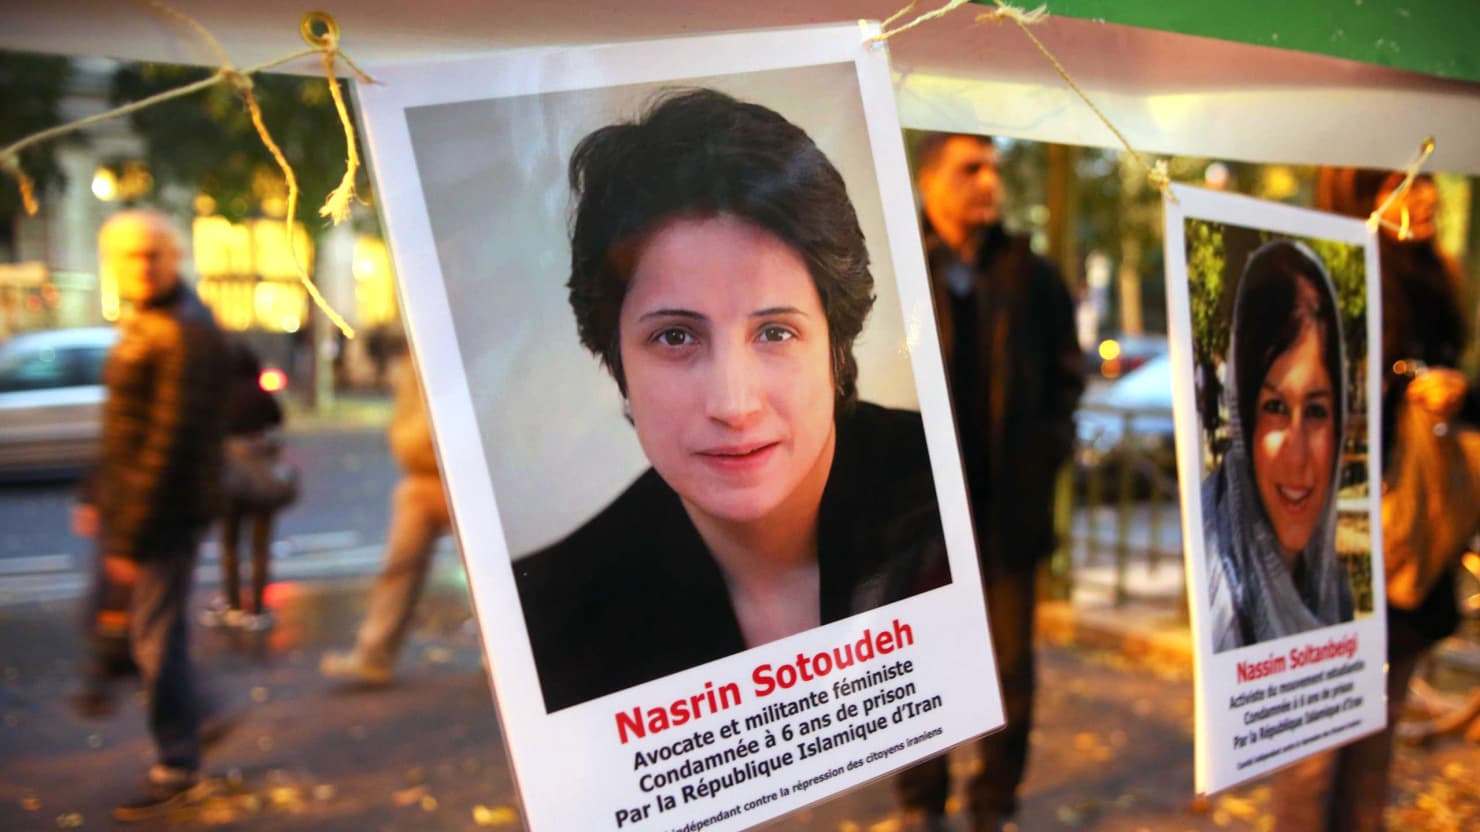 الناشطة البارزة المدافعة عن حقوق الإنسان نسرين سوتوده 